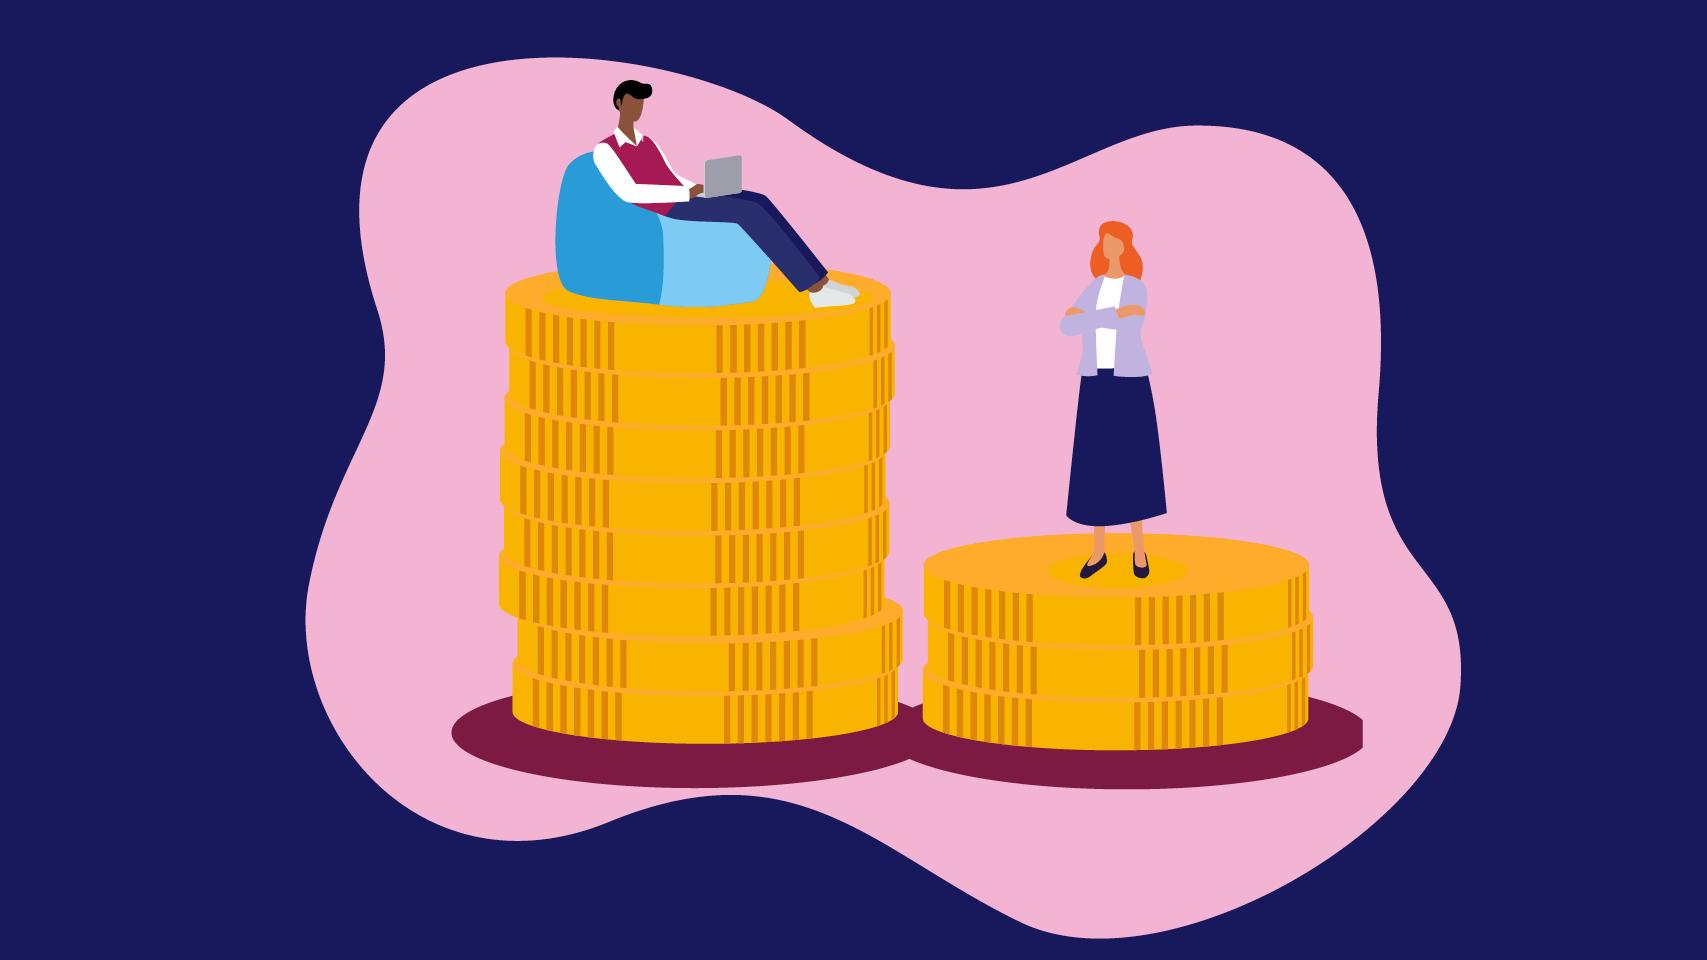 Illustration om lönegapet mellan kvinnor och män